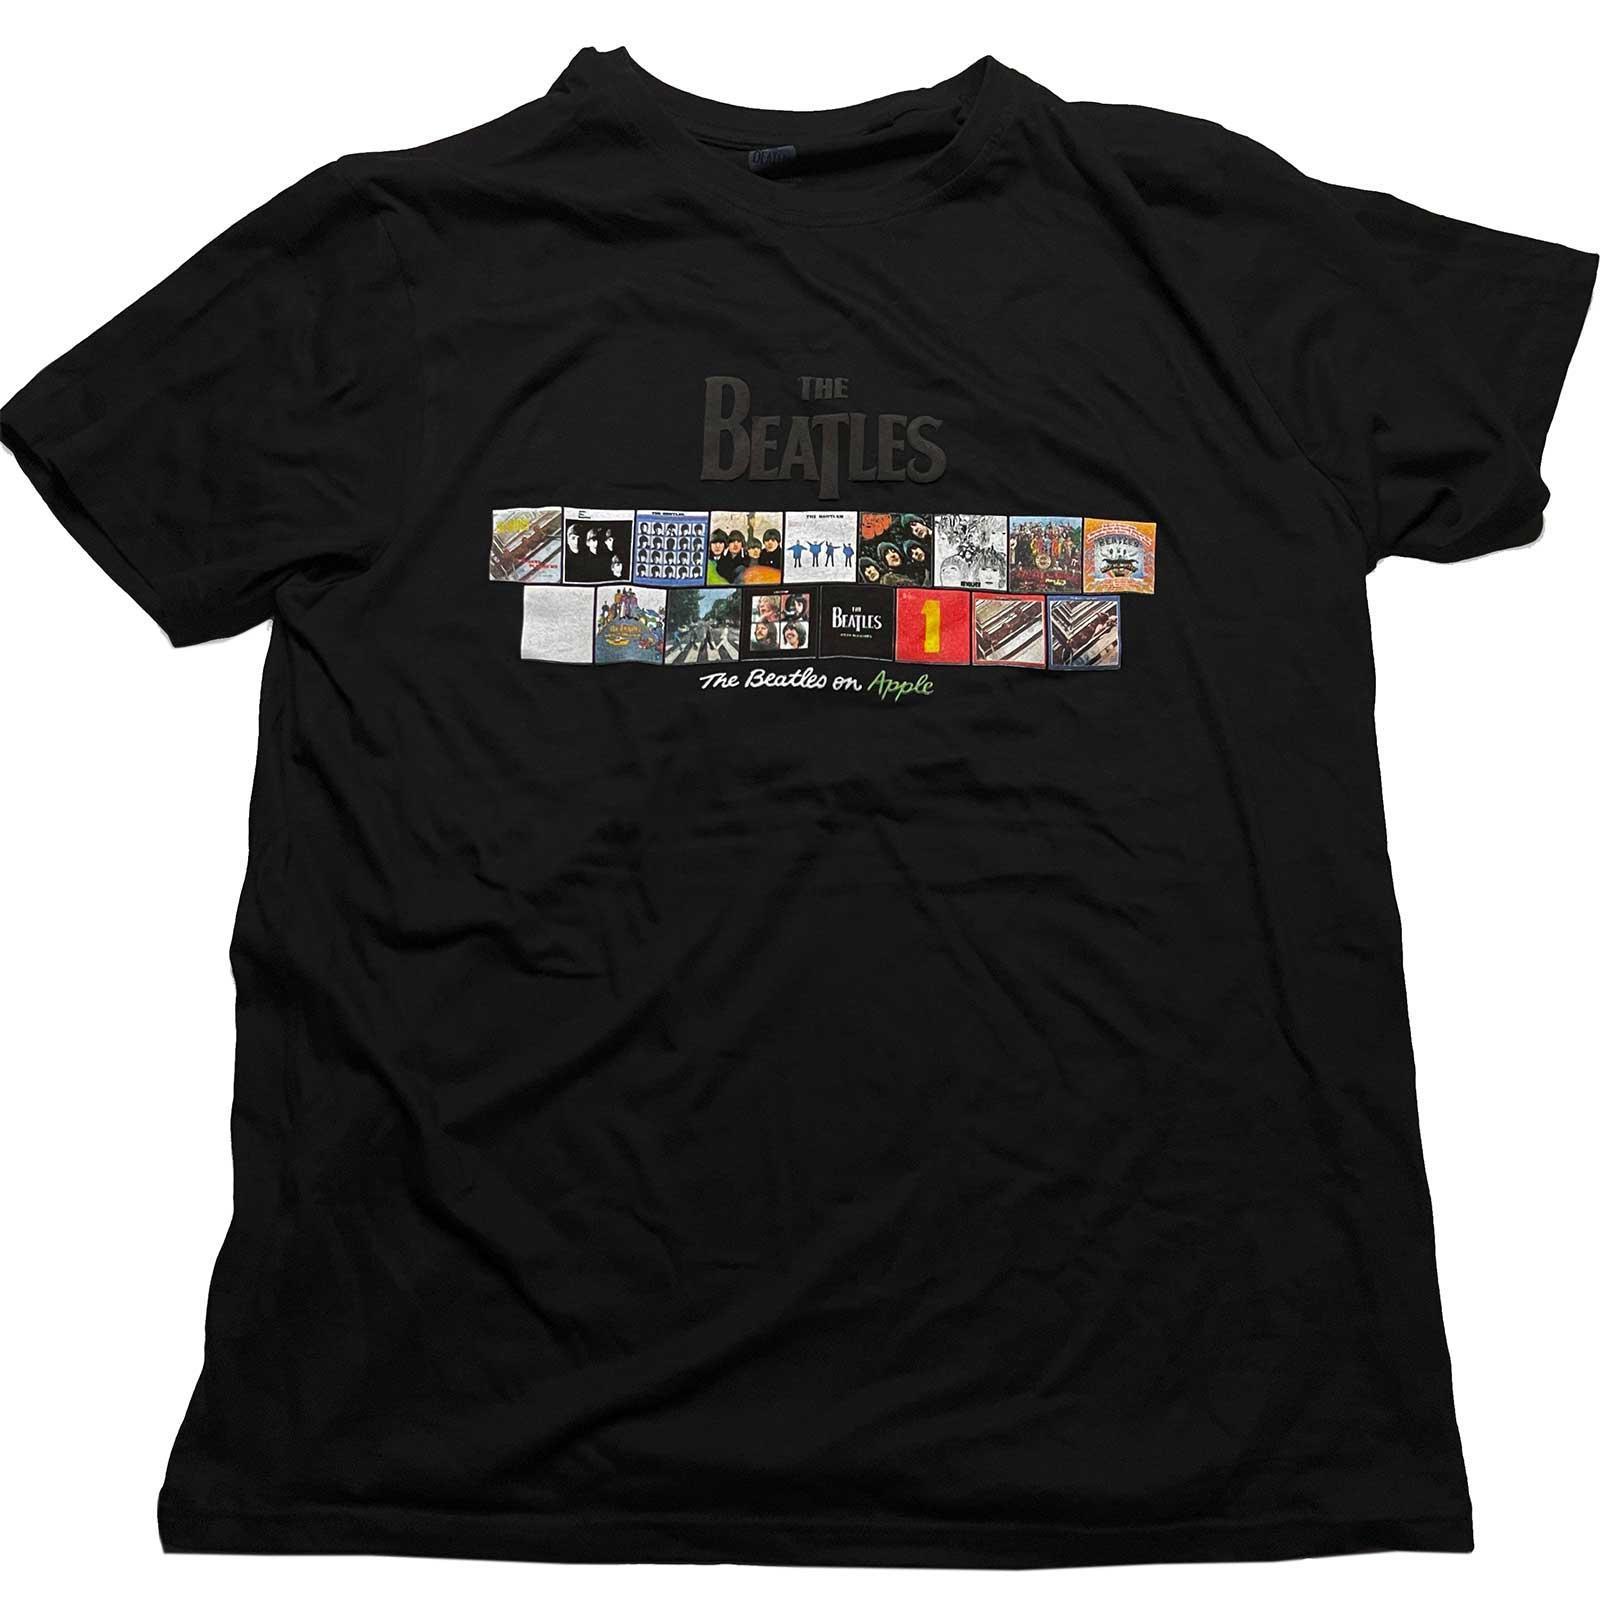 The Beatles Unisex Adult Albums on Apple Cotton T-Shirt (Black) (M)